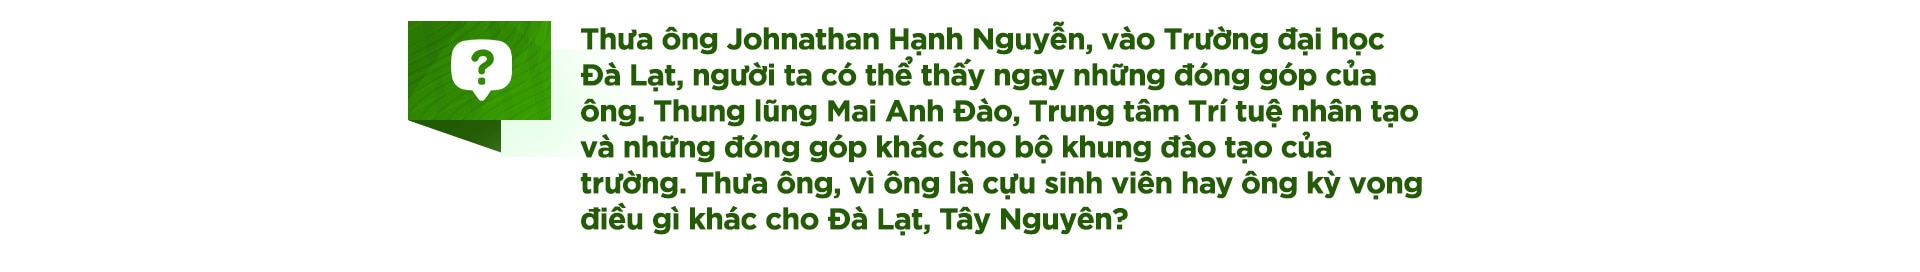 Doanh nhân Johnathan Hạnh Nguyễn tâm sự chuyện học với sinh viên - Ảnh 1.